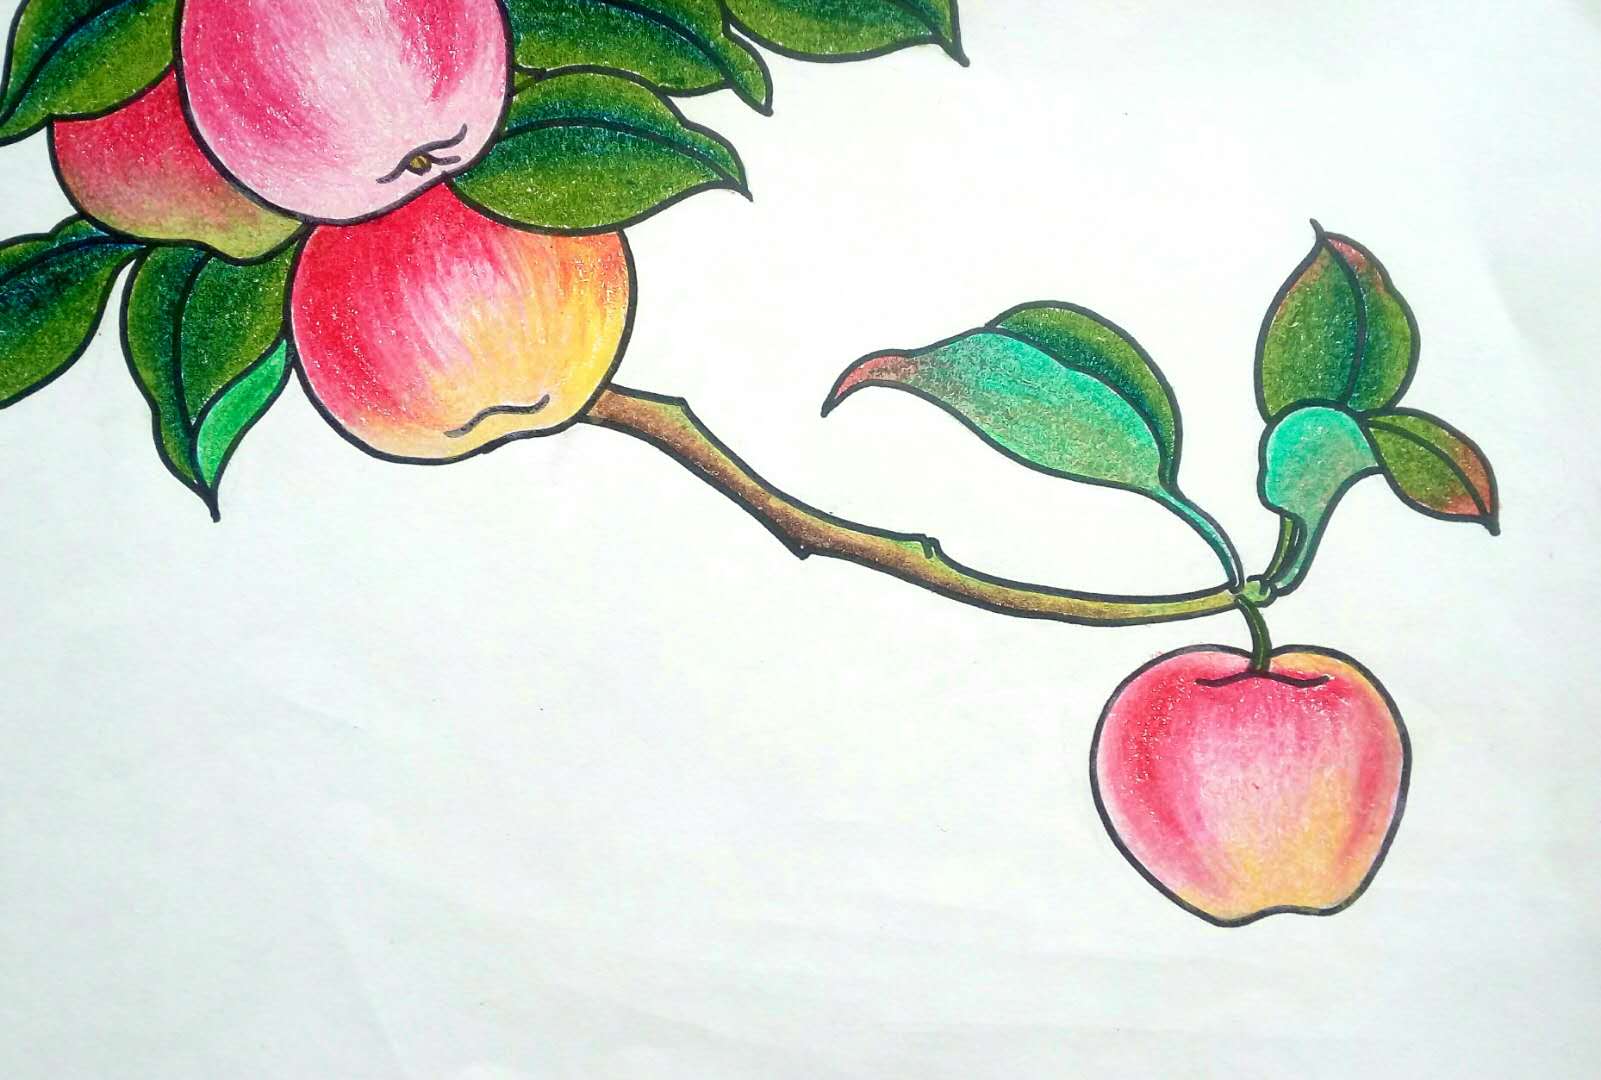 幼儿园画苹果图片大全图片